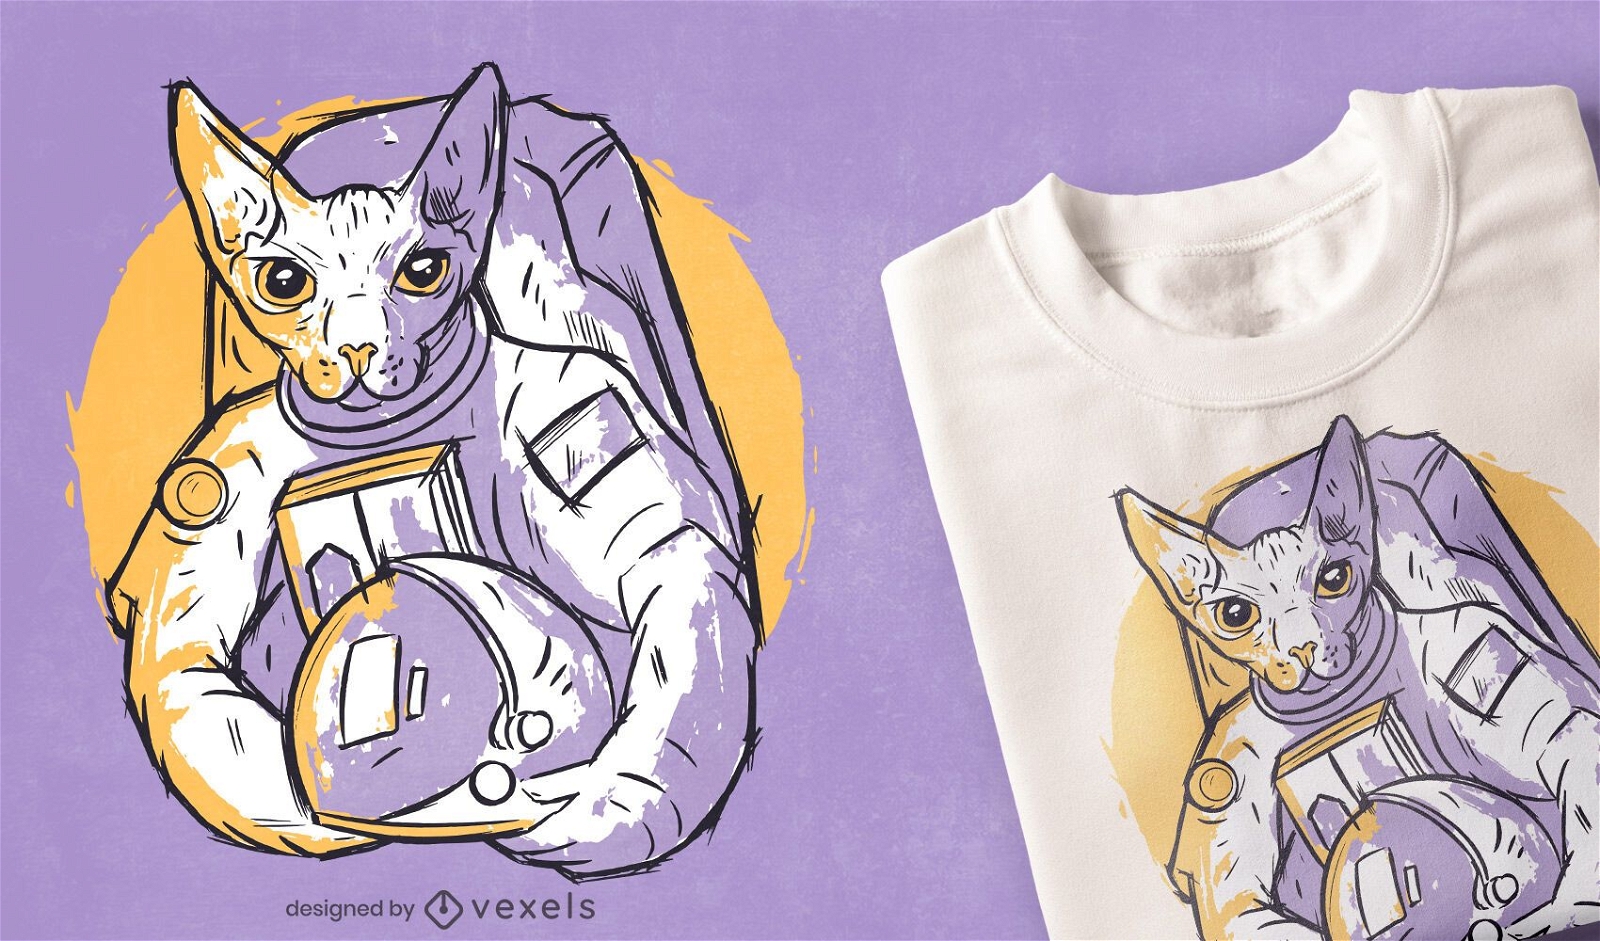 Dise?o de camiseta dibujada a mano de gato astronauta.